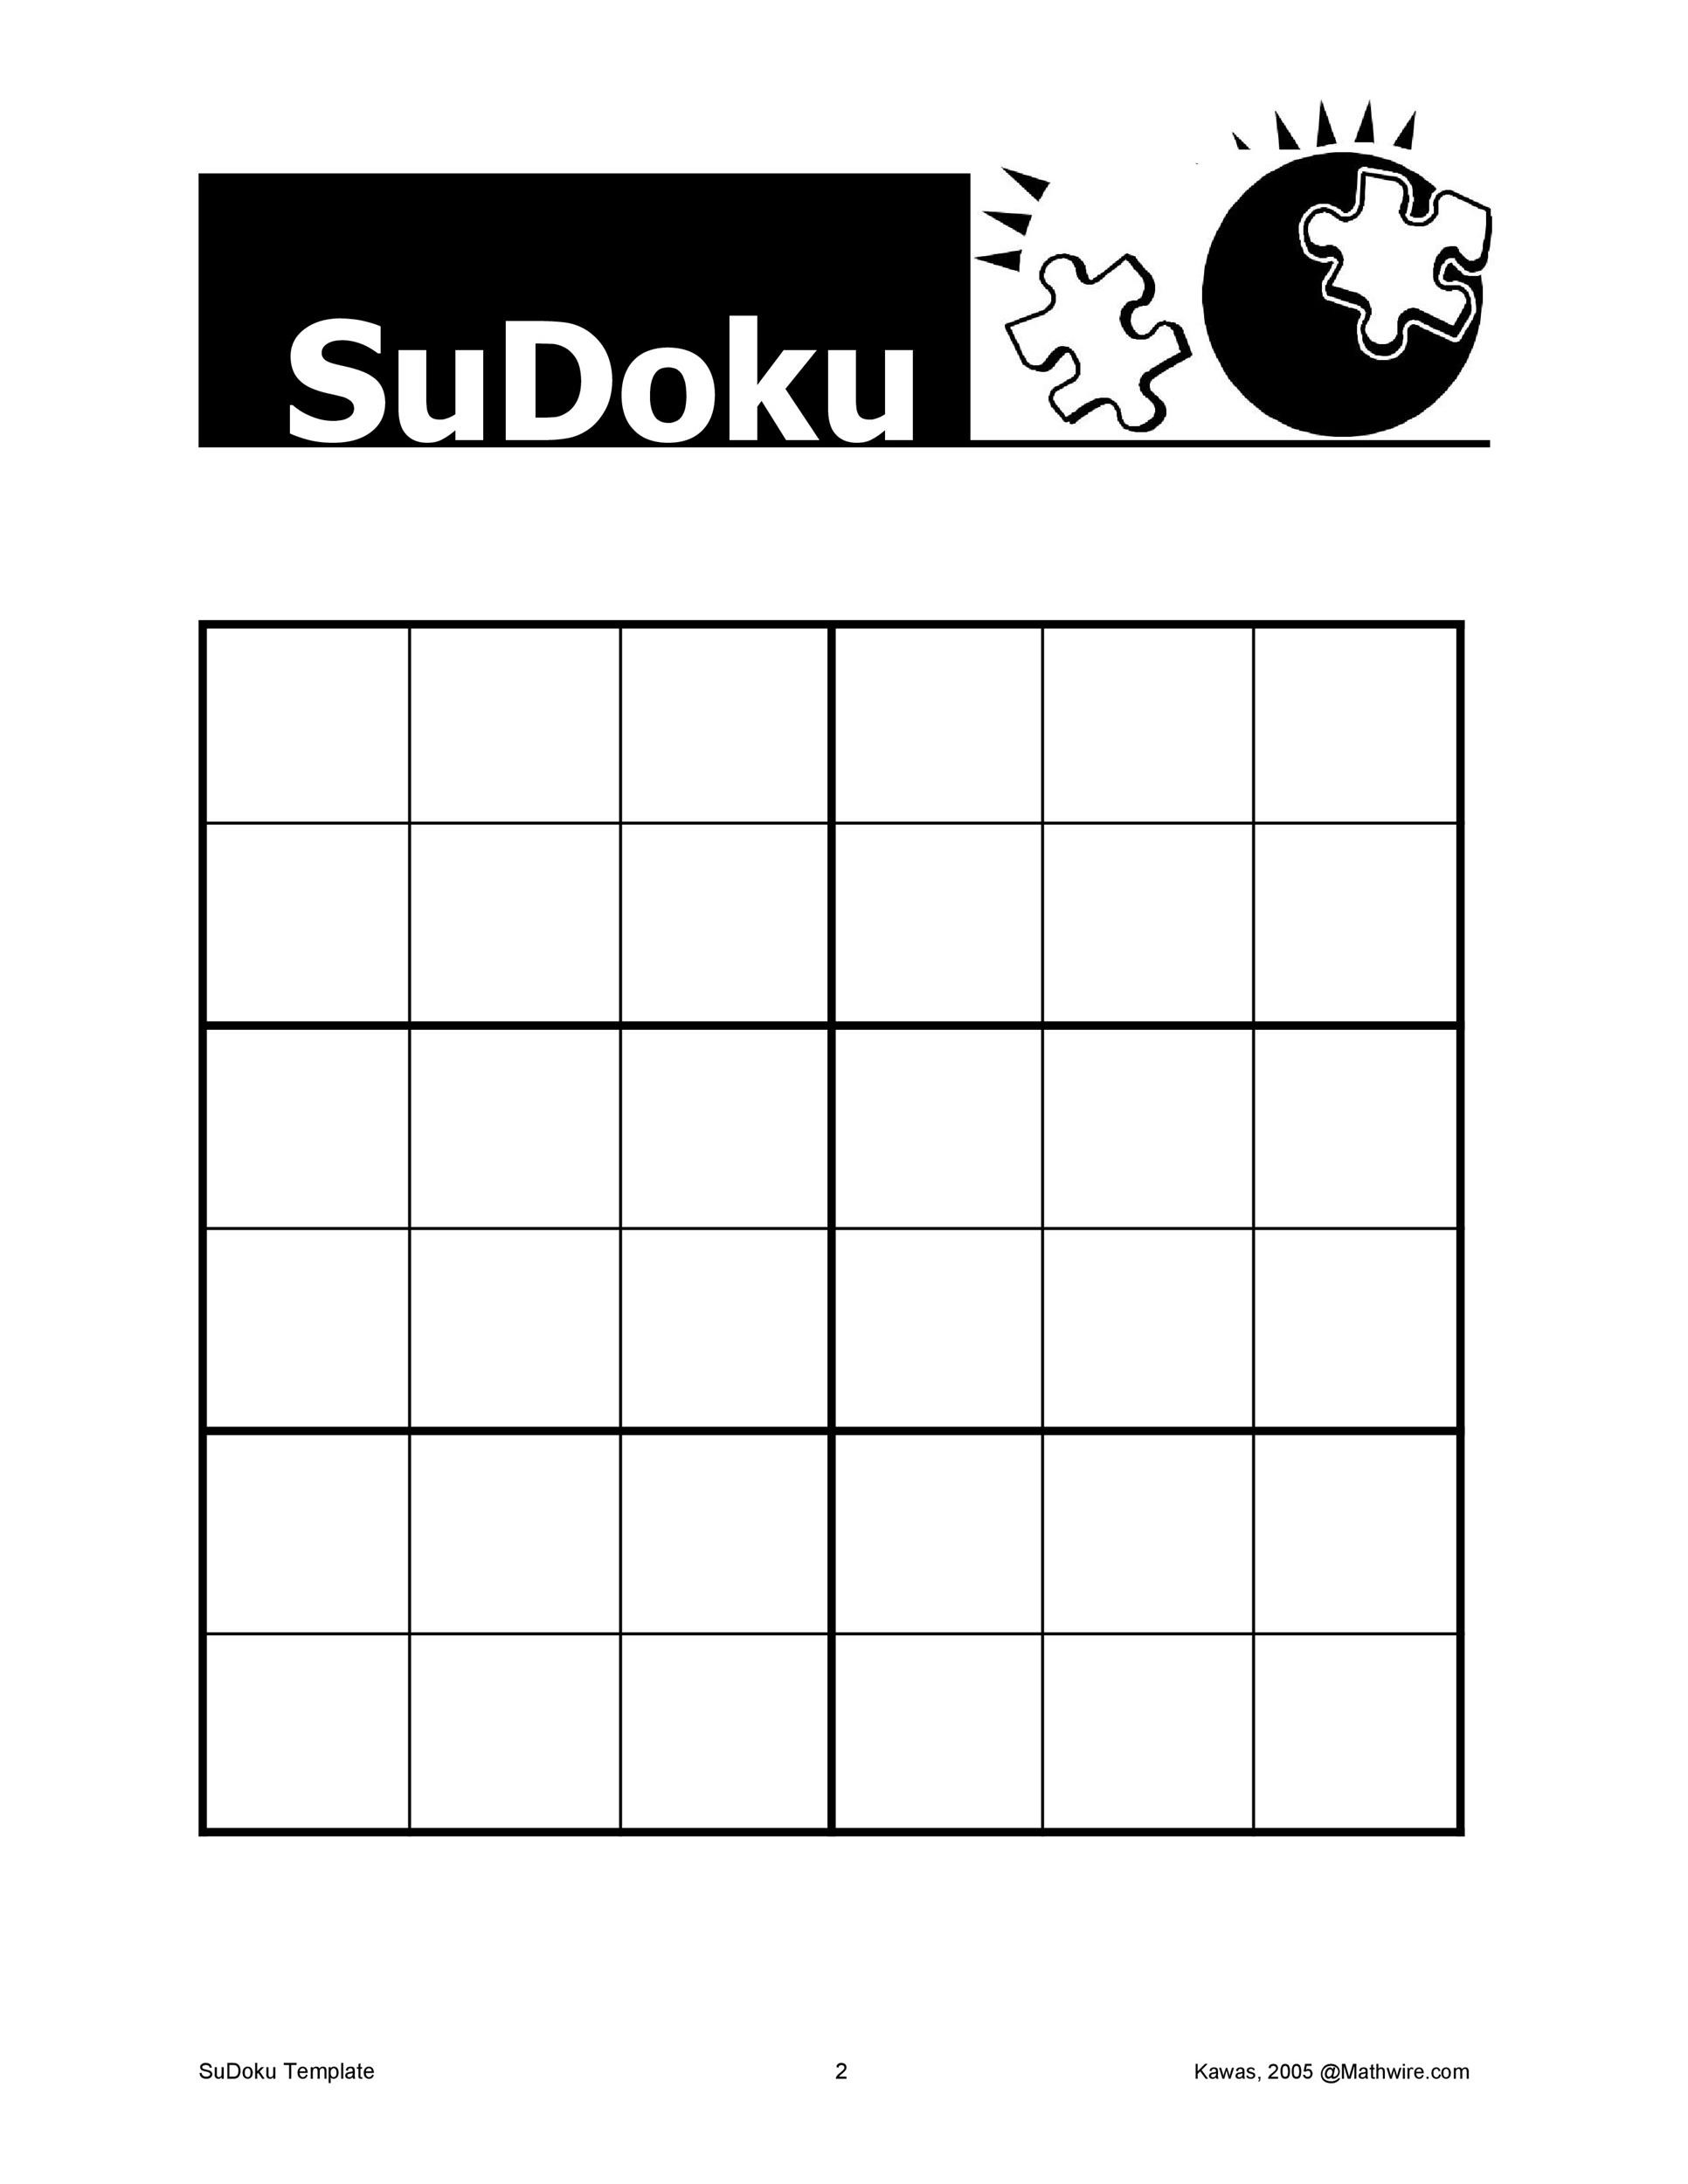 sudoku-printable-blank-customize-and-print